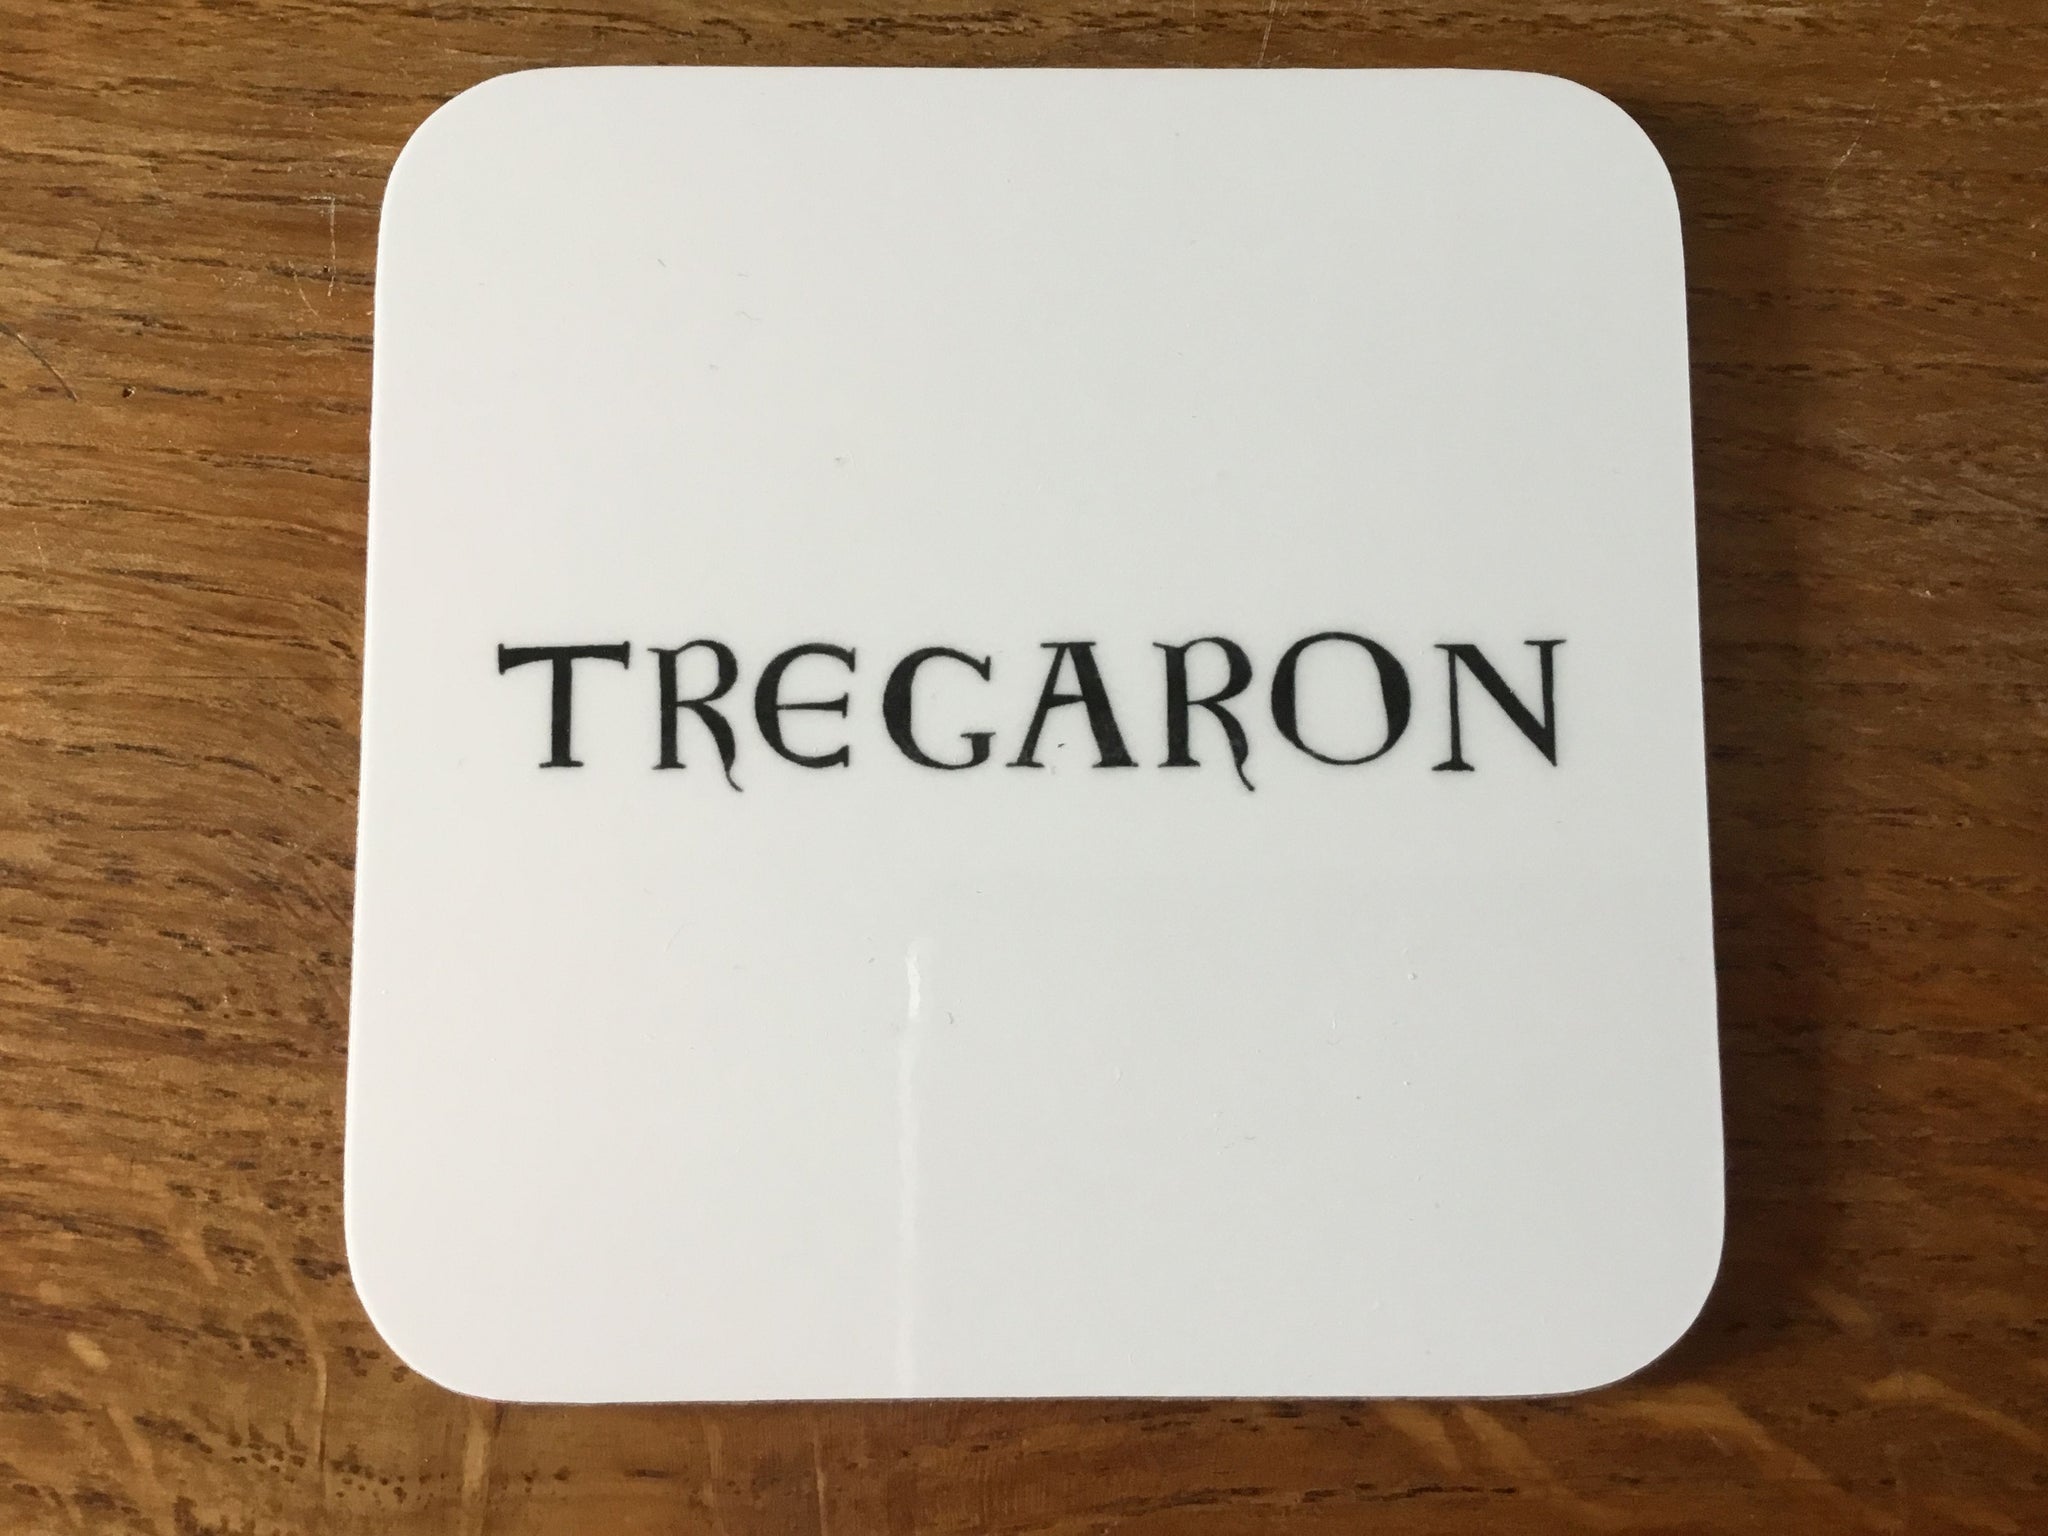 'Tregaron' Coaster by Valériane Leblond